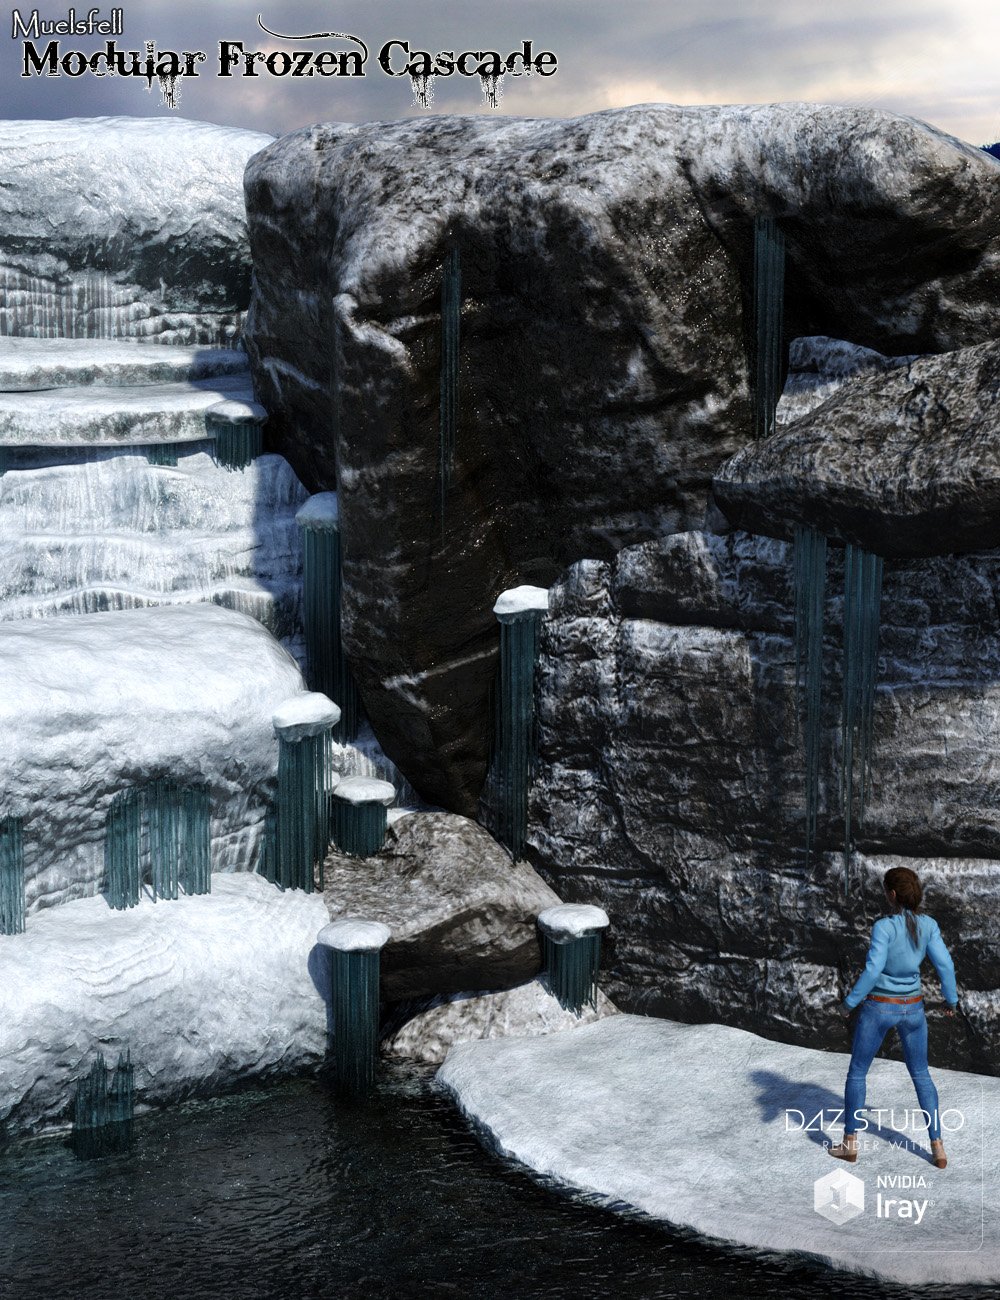 Muelsfell Modular Frozen Cascade by: E-Arkham, 3D Models by Daz 3D